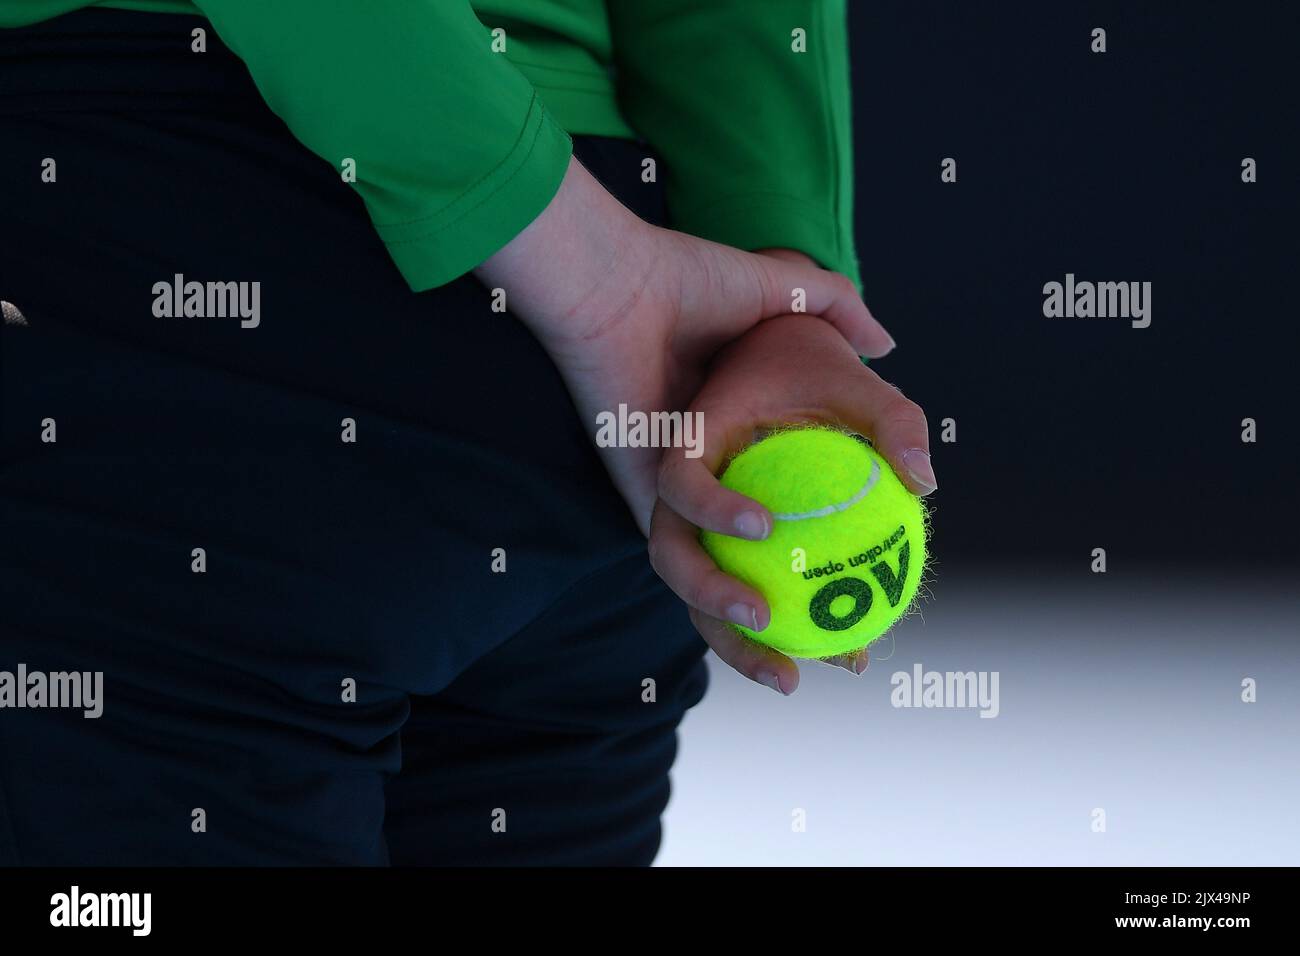 Un bonhomme de balle est vu avec une balle de tennis de la marque  Australian Open au cours de la ronde 2 de l'Open d'Australie le troisième  jour à Melbourne, en Australie,